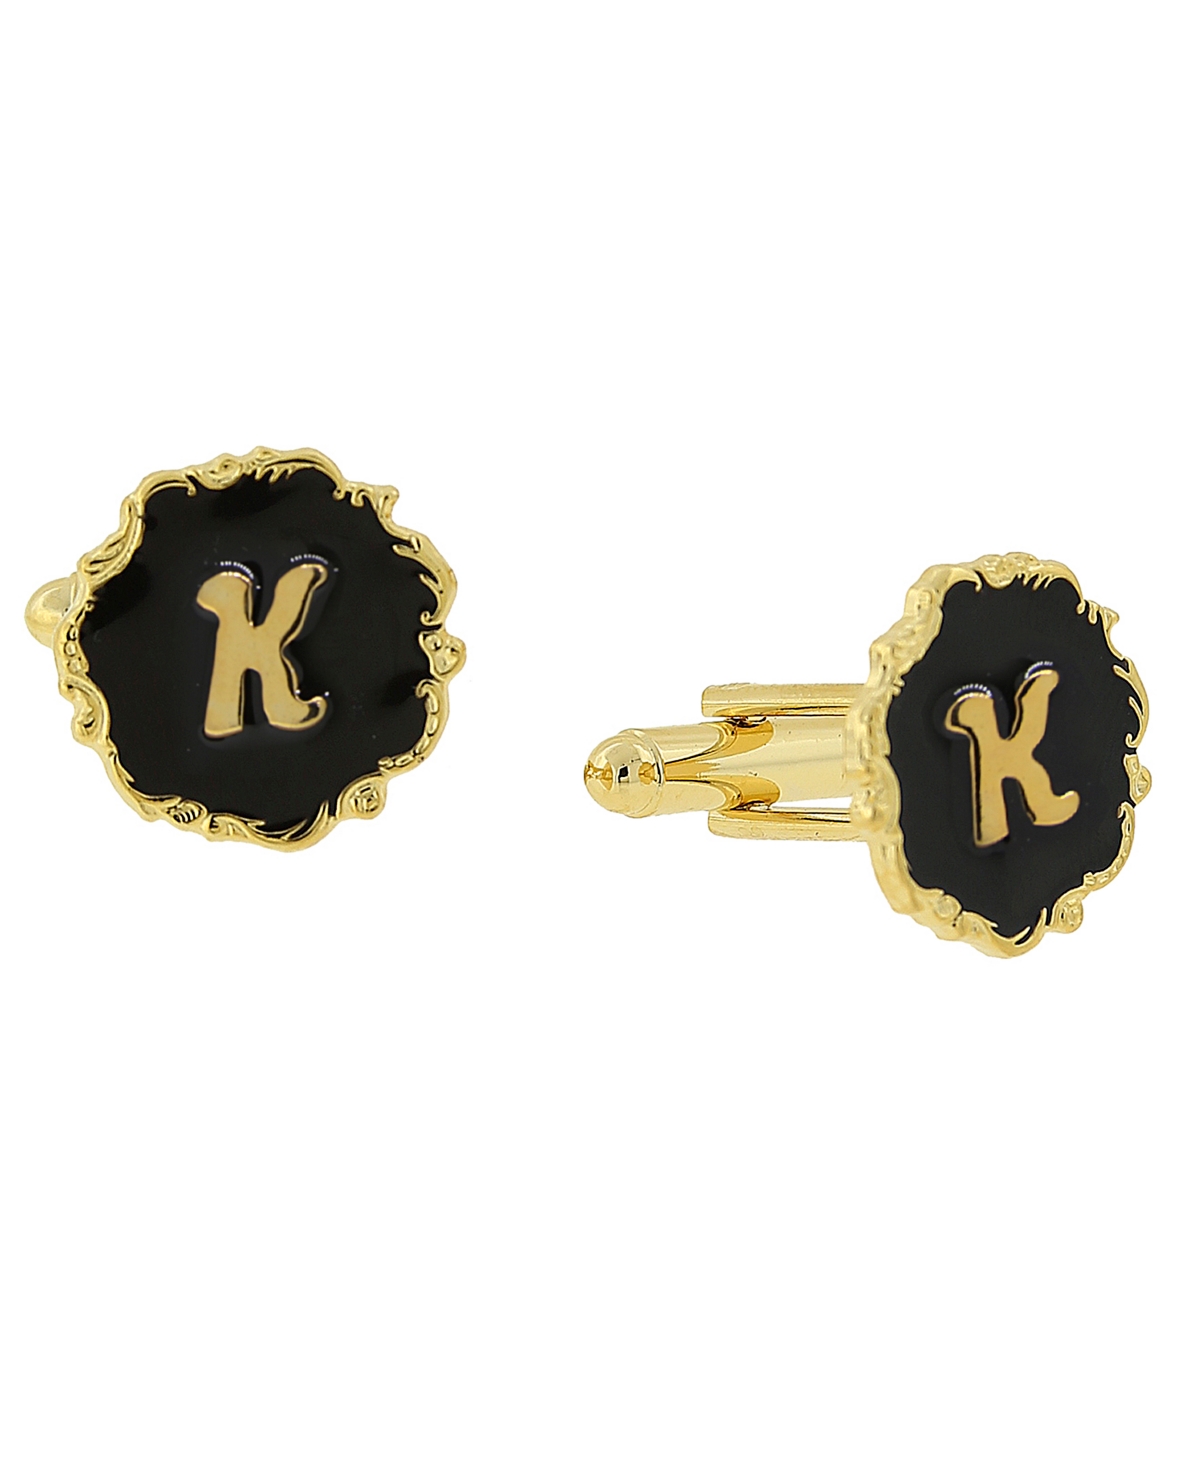 1928 Jewelry 14k Gold-plated Enamel Initial K Cufflinks In Black